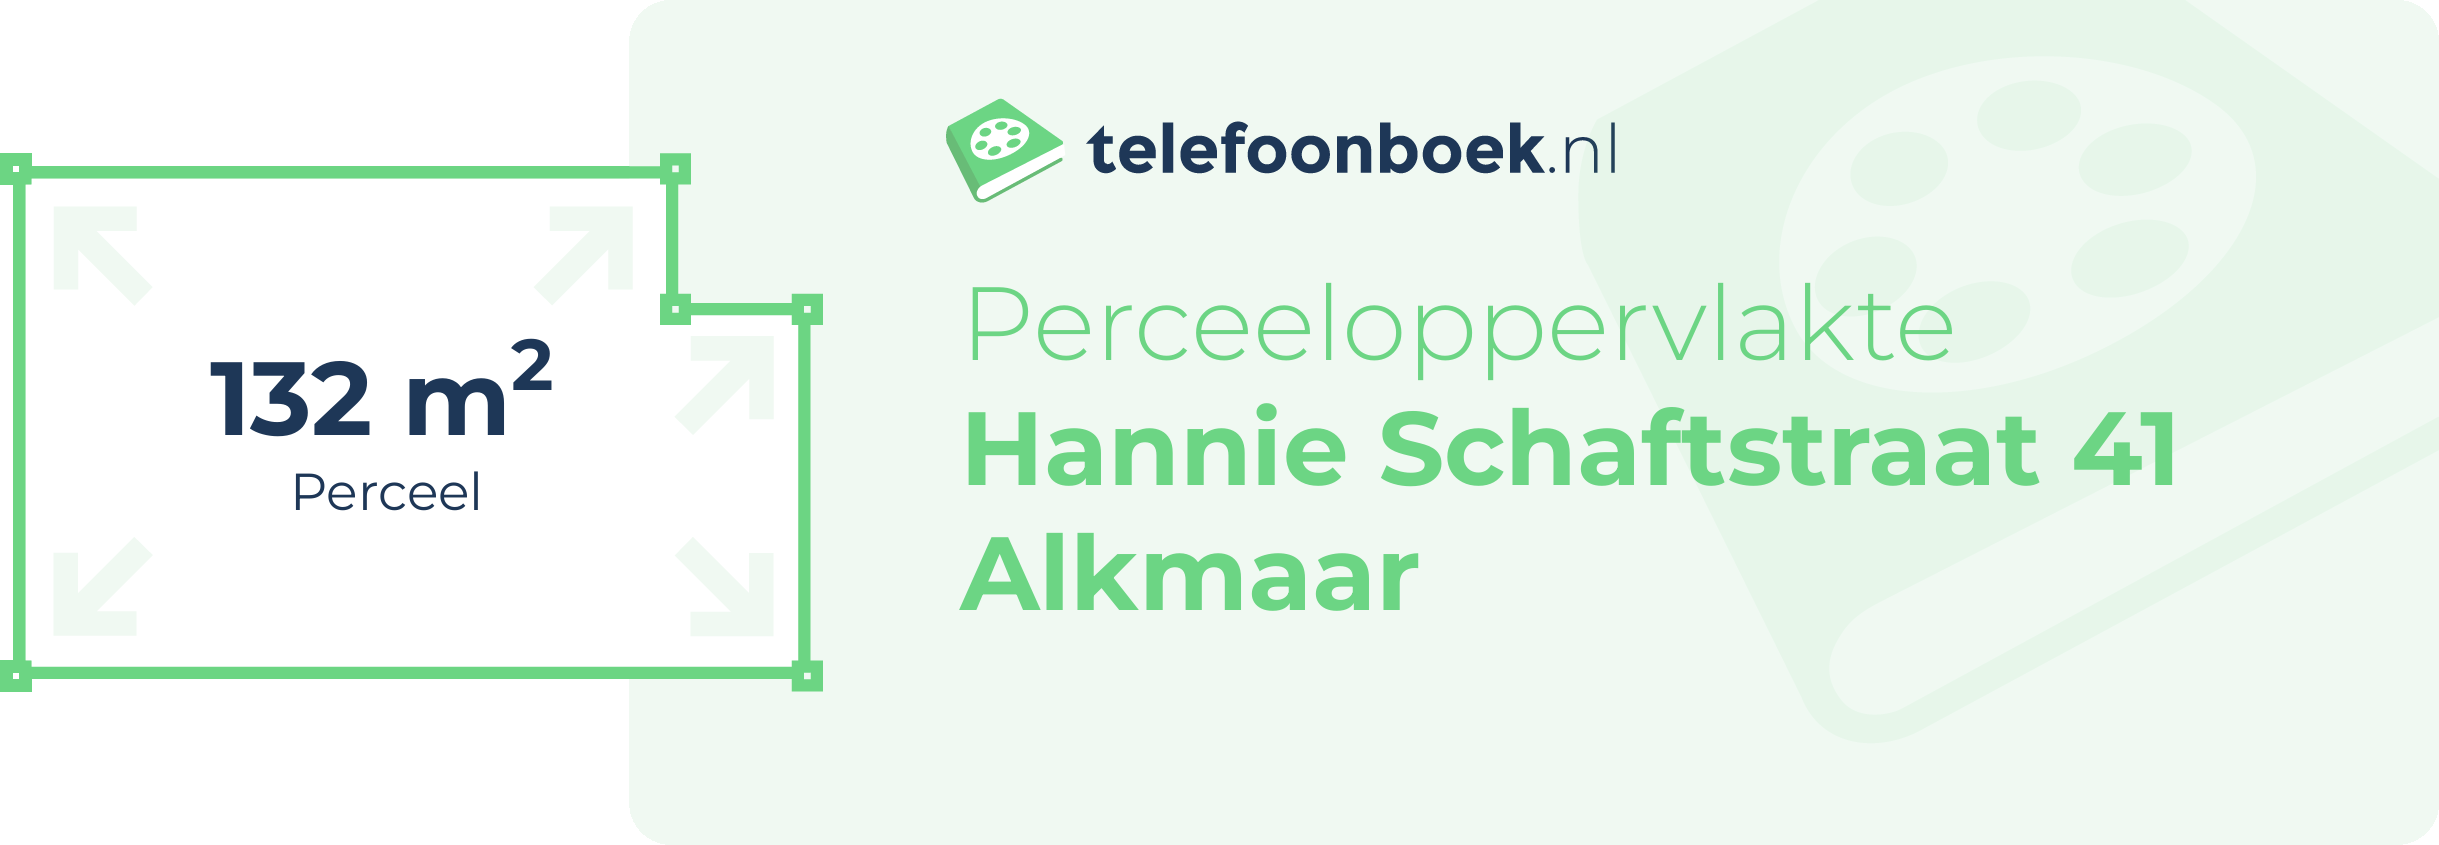 Perceeloppervlakte Hannie Schaftstraat 41 Alkmaar